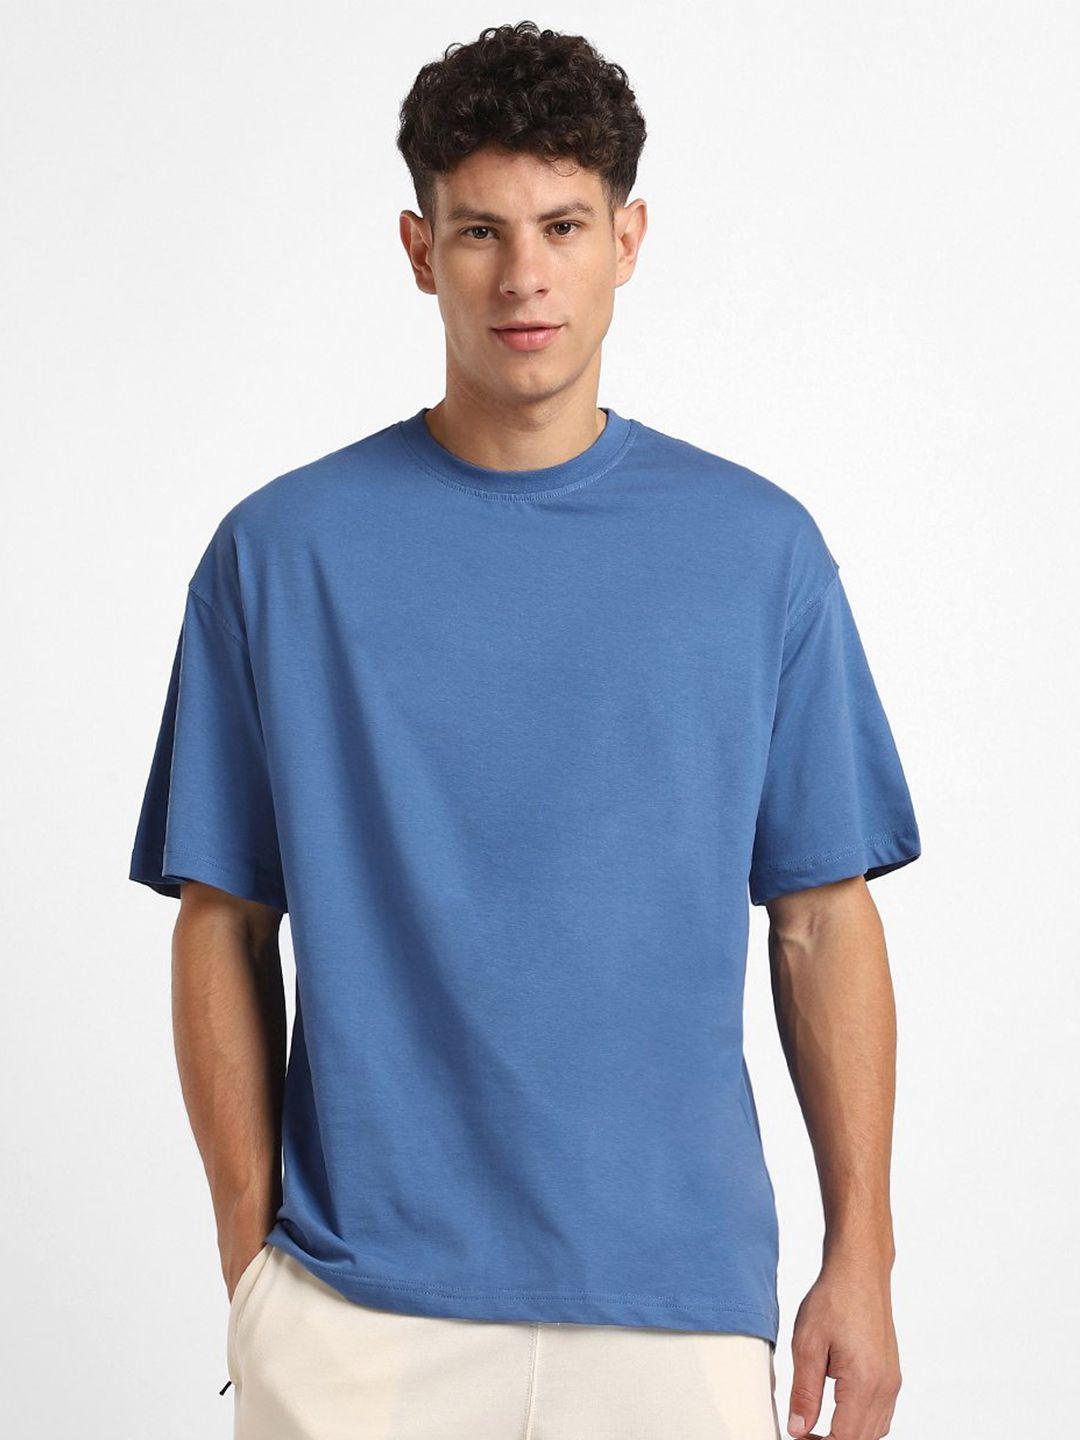 nobero-round-neck-short-sleeves-oversized-cotton-t-shirt